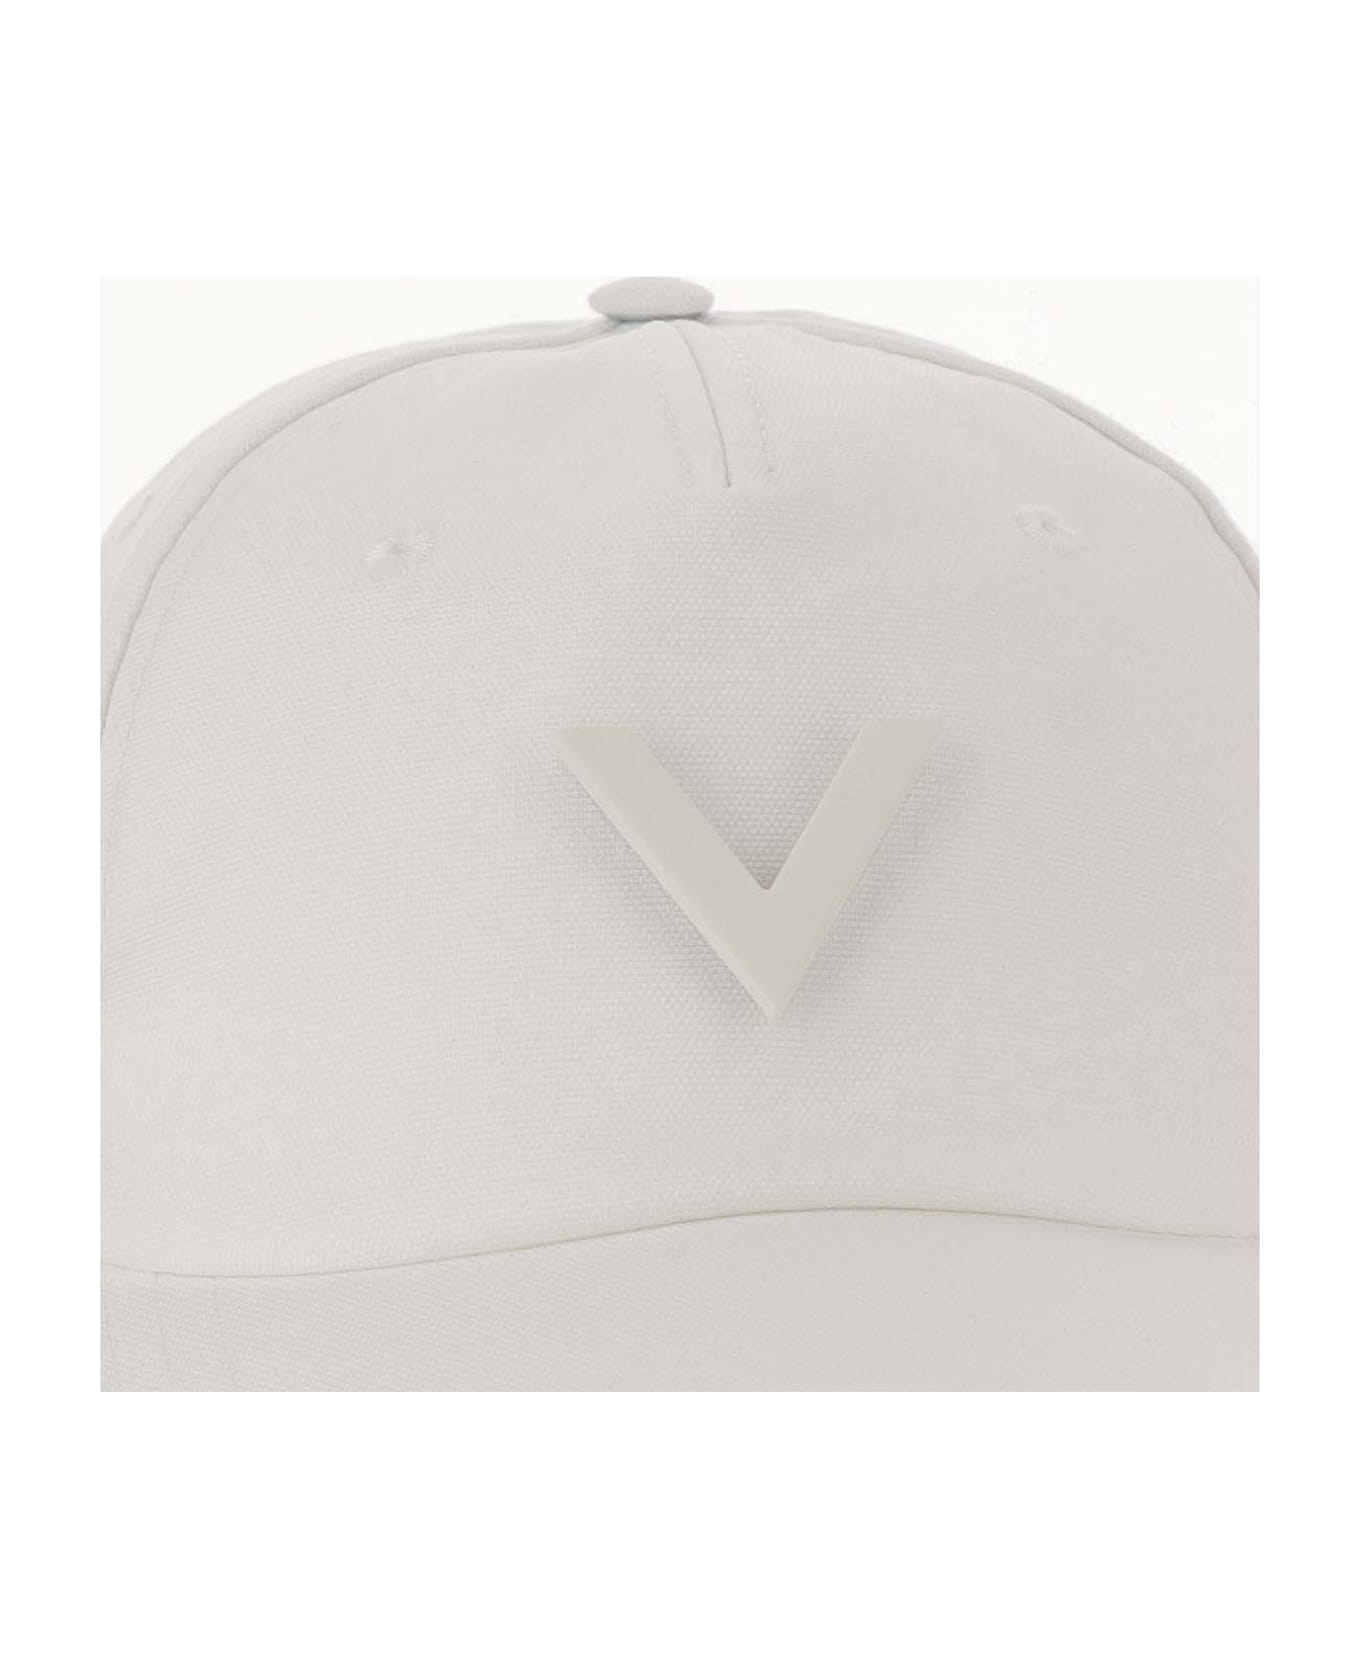 Valentino Garavani Canvas Hat With Vlogo - Ivory